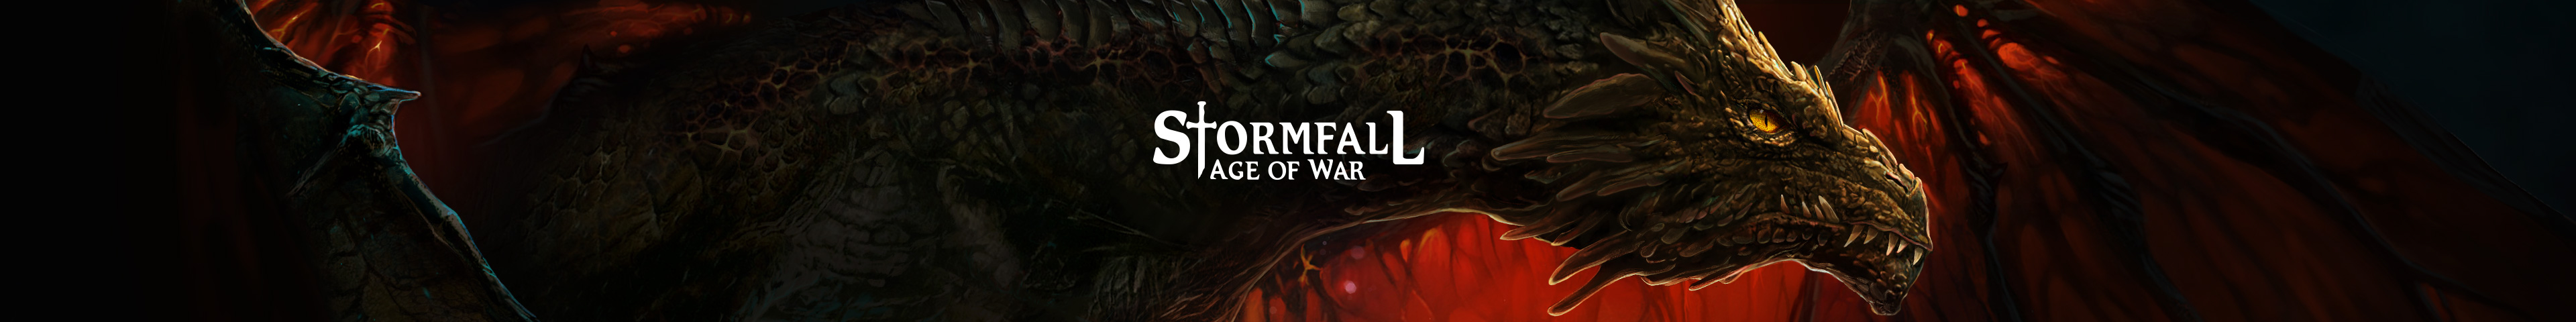 Die Liga Thor (Stormfall Age of War Facebook) sucht Aktive Spieler!